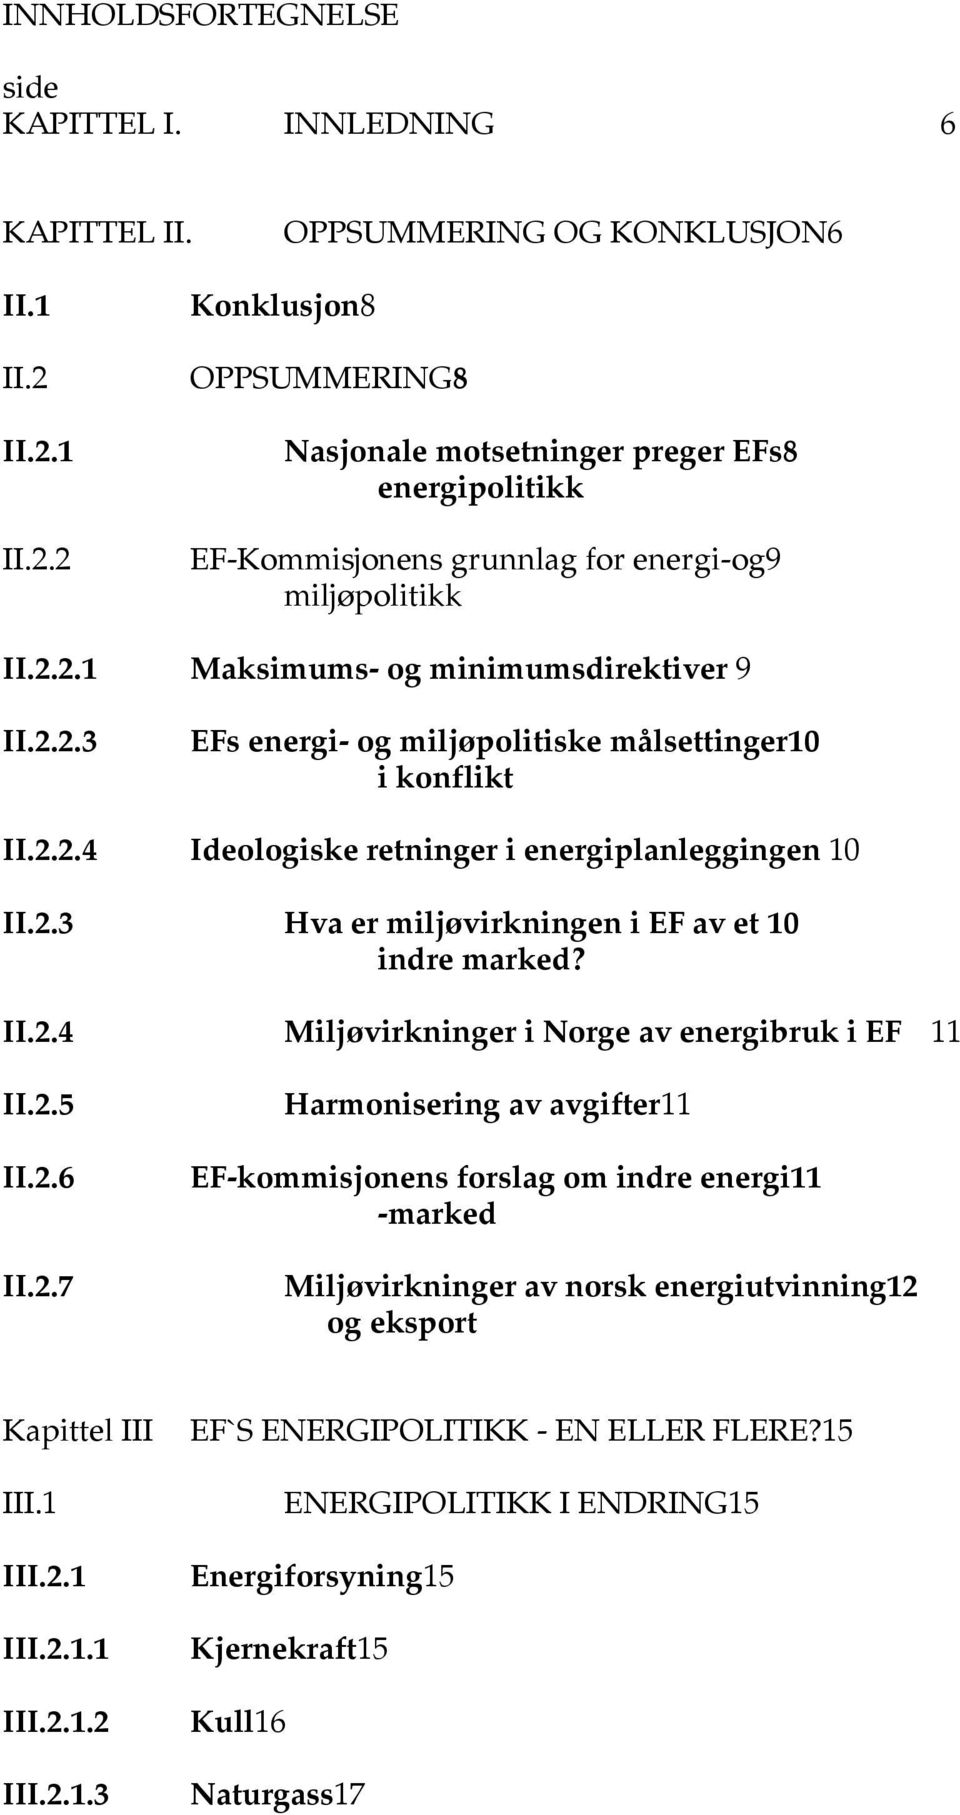 2.2.4 Ideologiske retninger i energiplanleggingen 10 II.2.3 Hva er miljøvirkningen i EF av et 10 indre marked? II.2.4 Miljøvirkninger i Norge av energibruk i EF 11 II.2.5 II.2.6 II.2.7 Harmonisering av avgifter11 EF-kommisjonens forslag om indre energi11 -marked Miljøvirkninger av norsk energiutvinning12 og eksport Kapittel III III.